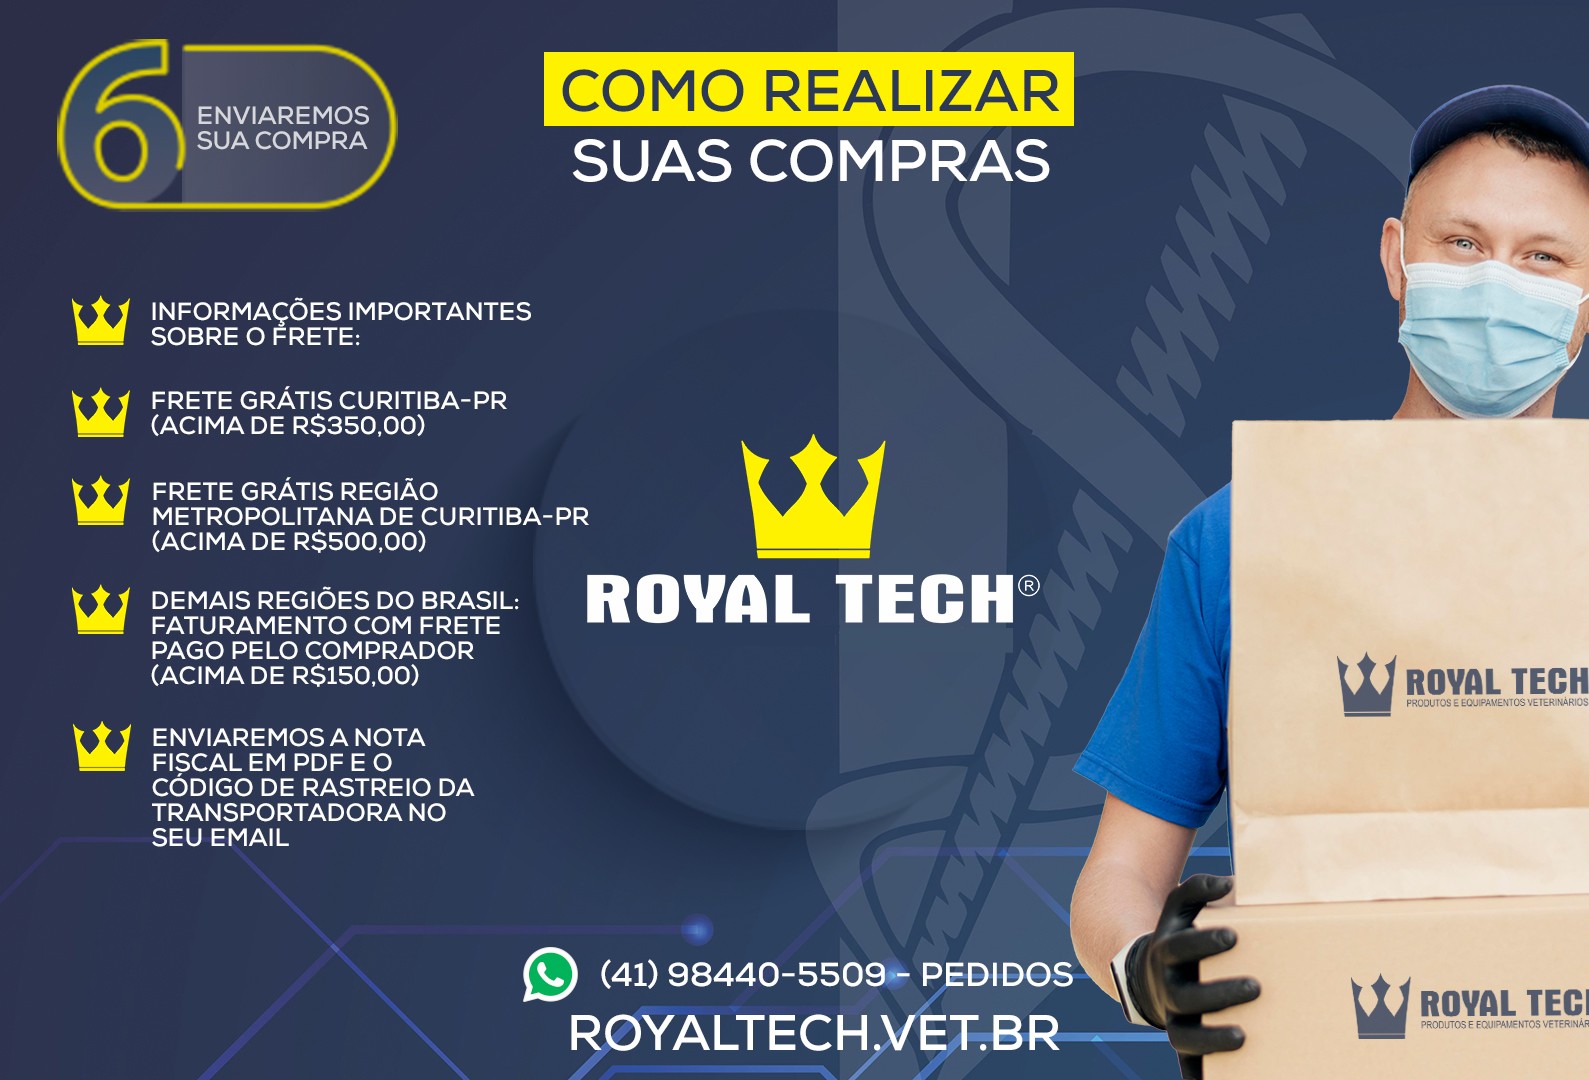 Royal Tech